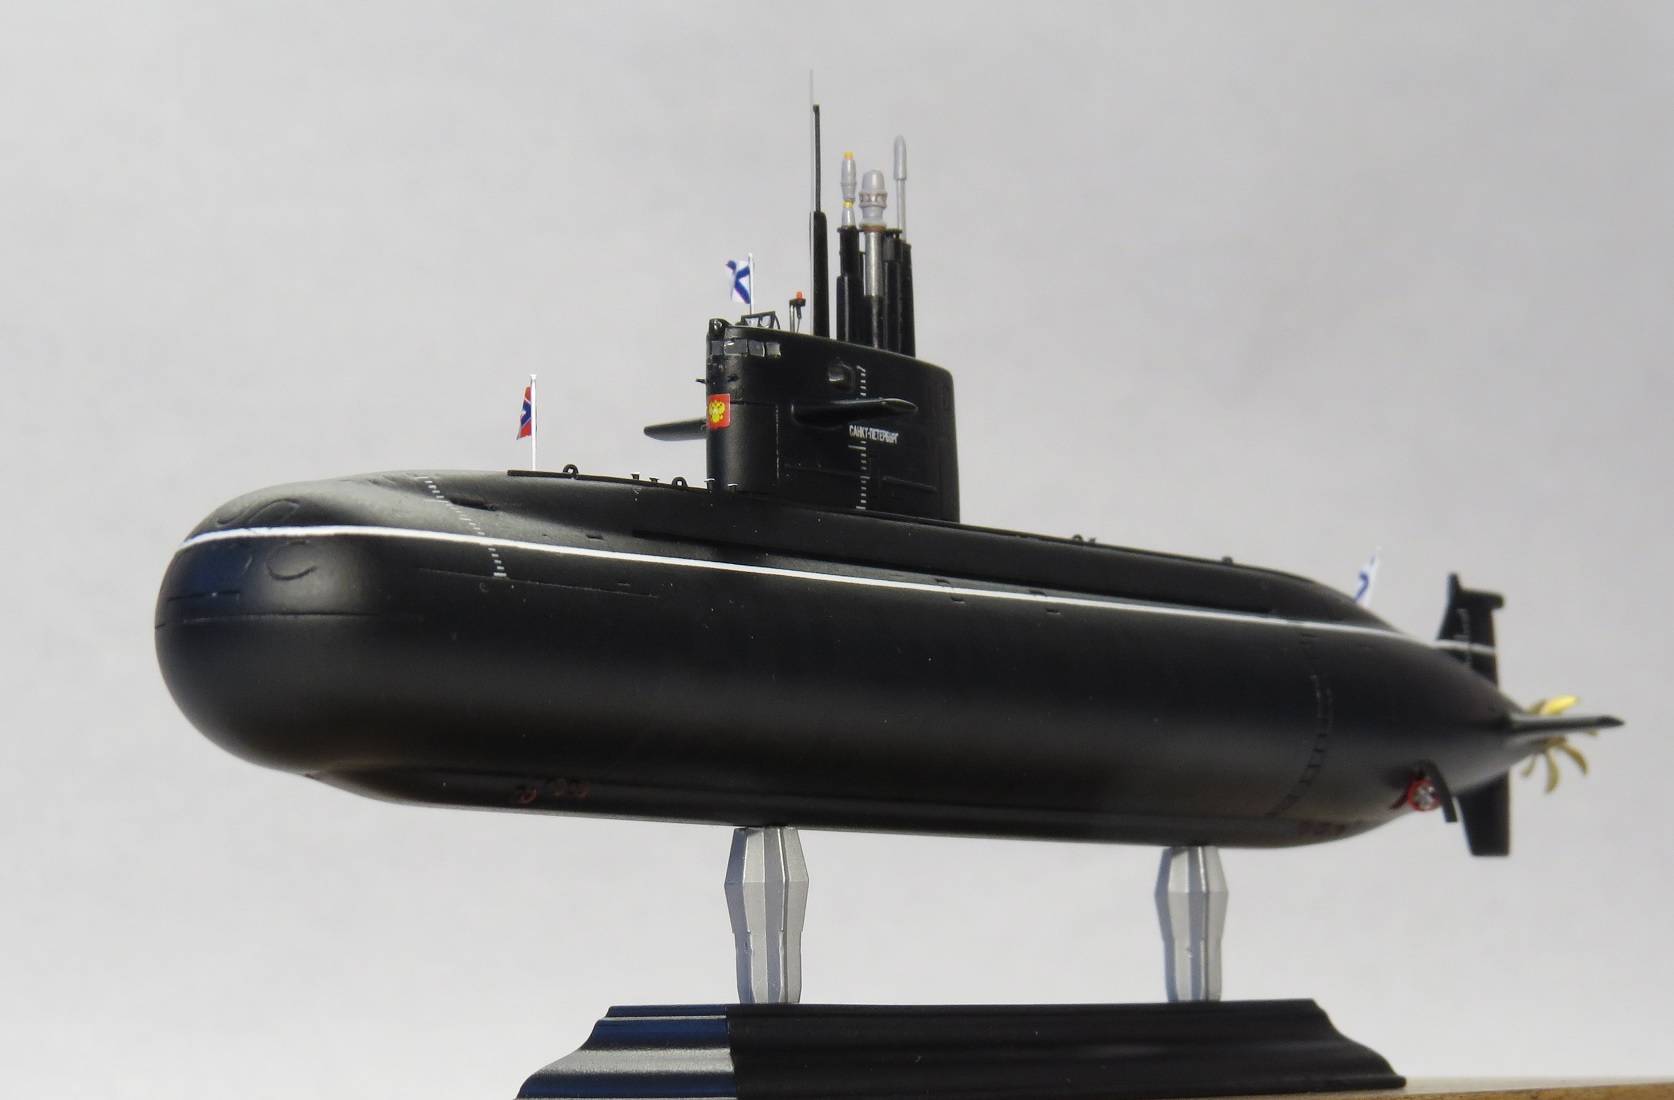 Что представляет собой подводная лодка «амур»?